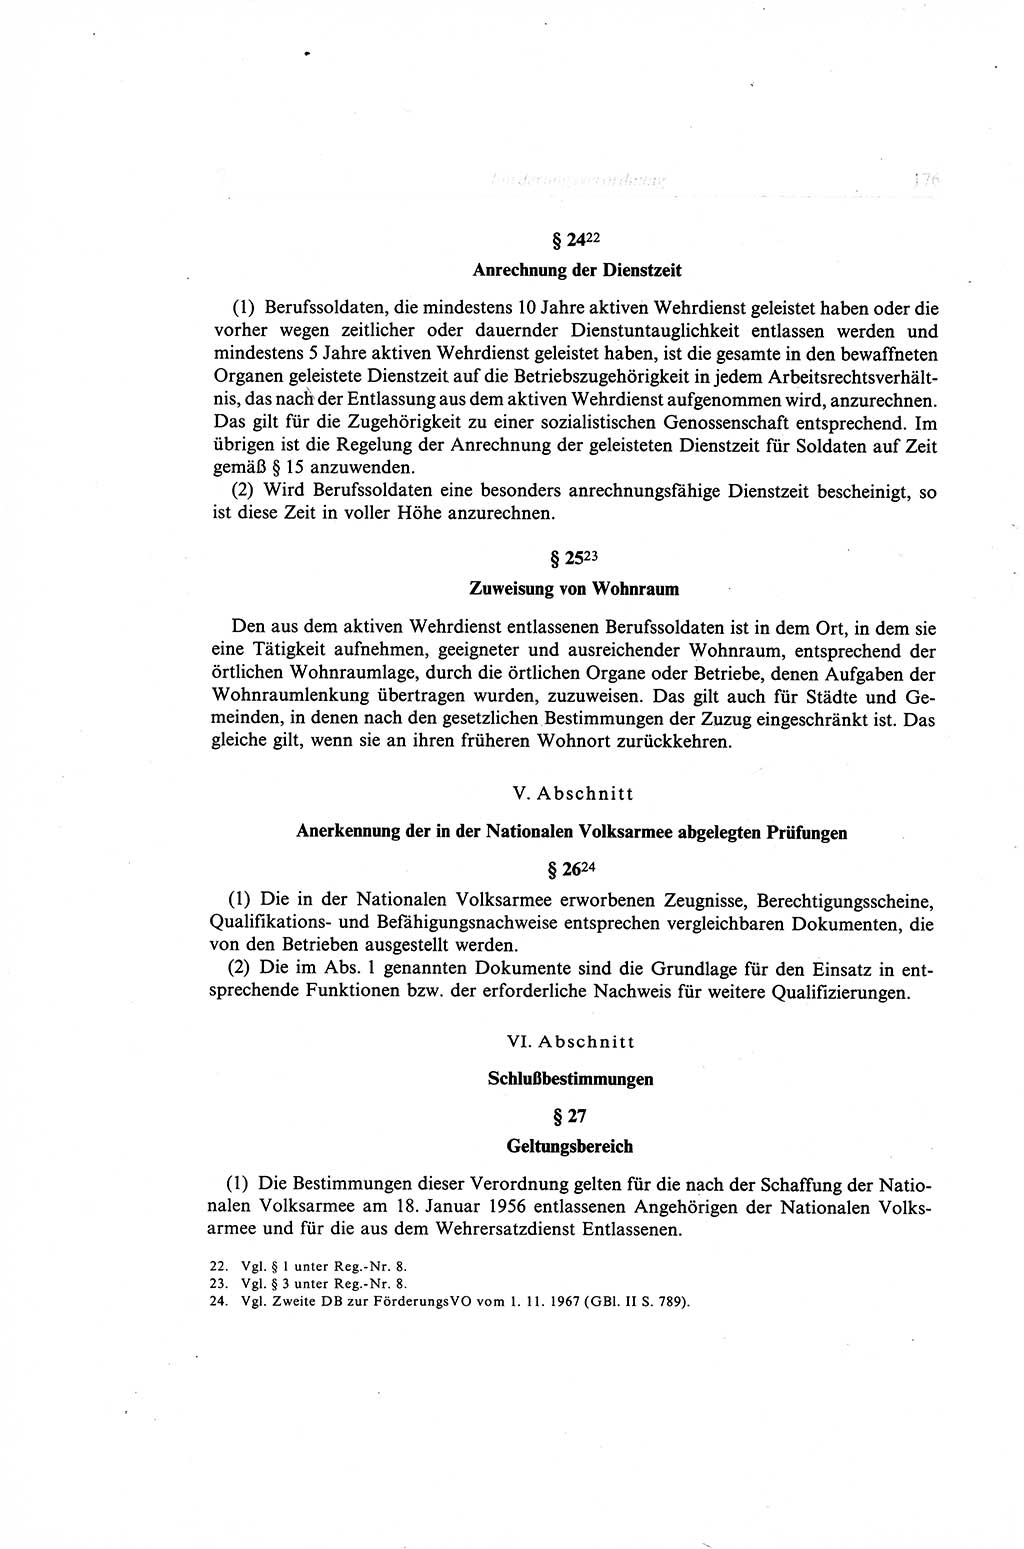 Gesetzbuch der Arbeit (GBA) und andere ausgewählte rechtliche Bestimmungen [Deutsche Demokratische Republik (DDR)] 1968, Seite 176 (GBA DDR 1968, S. 176)